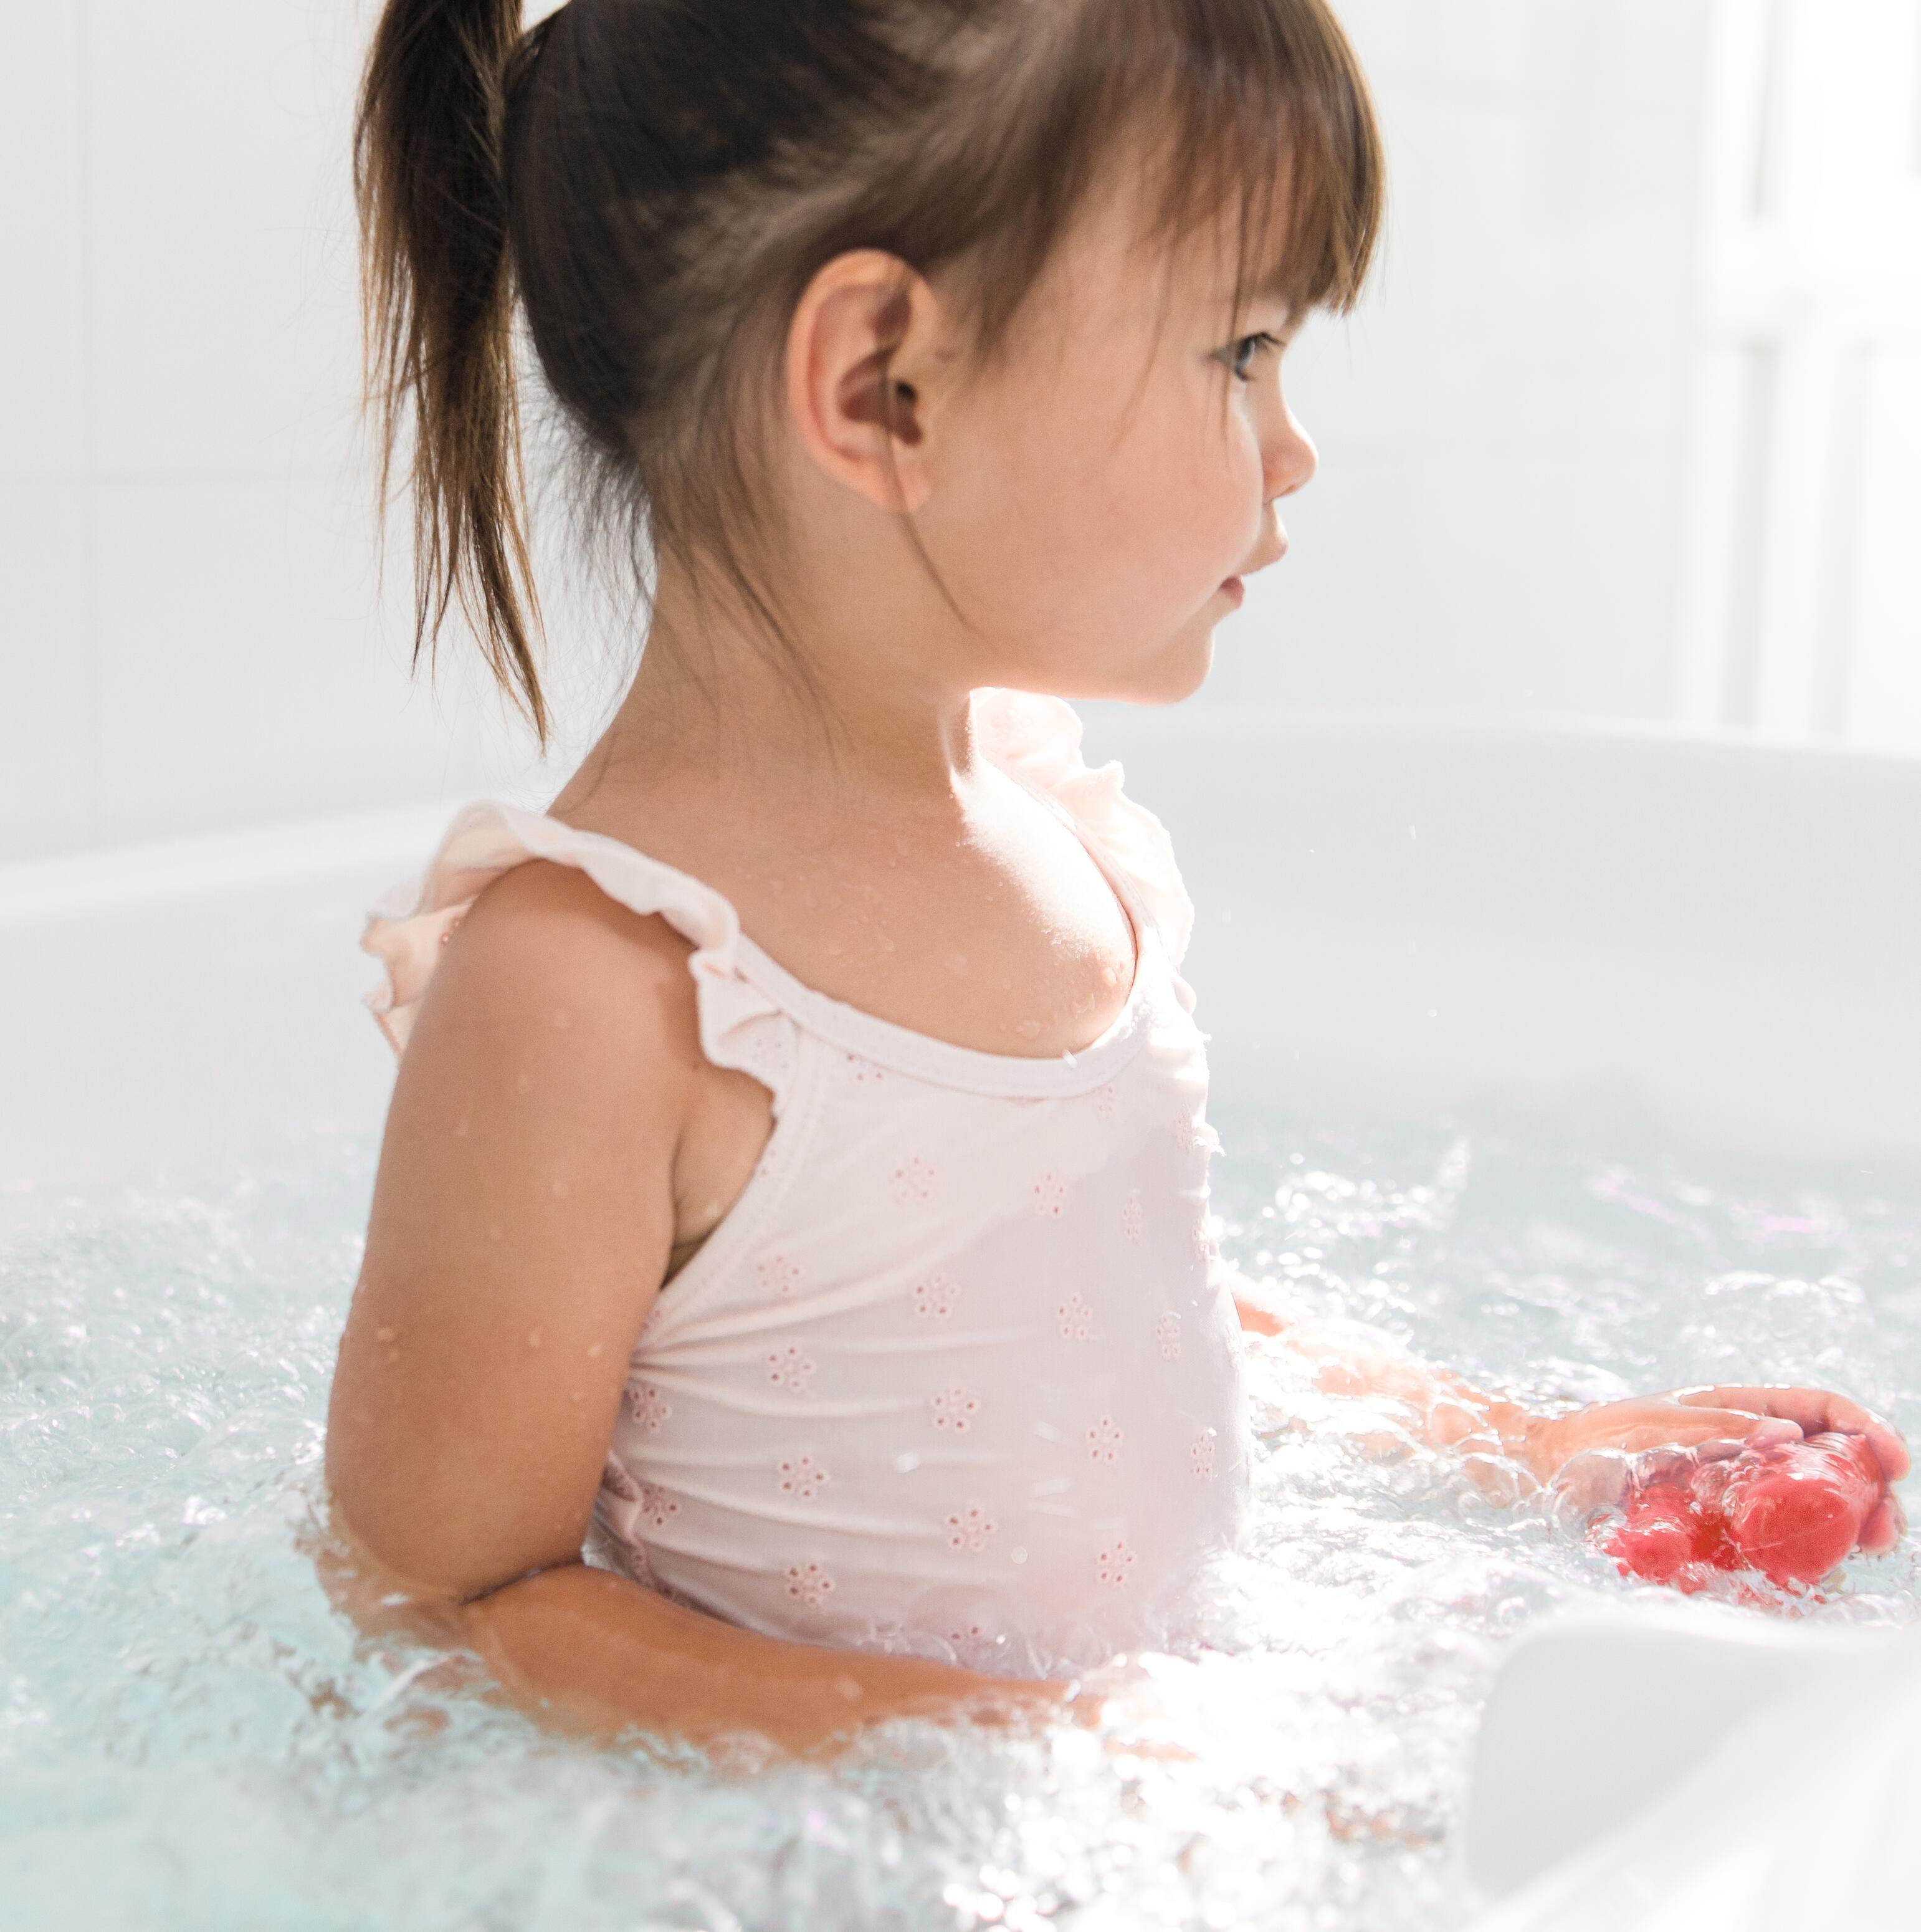 Eccema y afección inflamatoria crónica de la piel: ¿puede mi hijo bañarse?